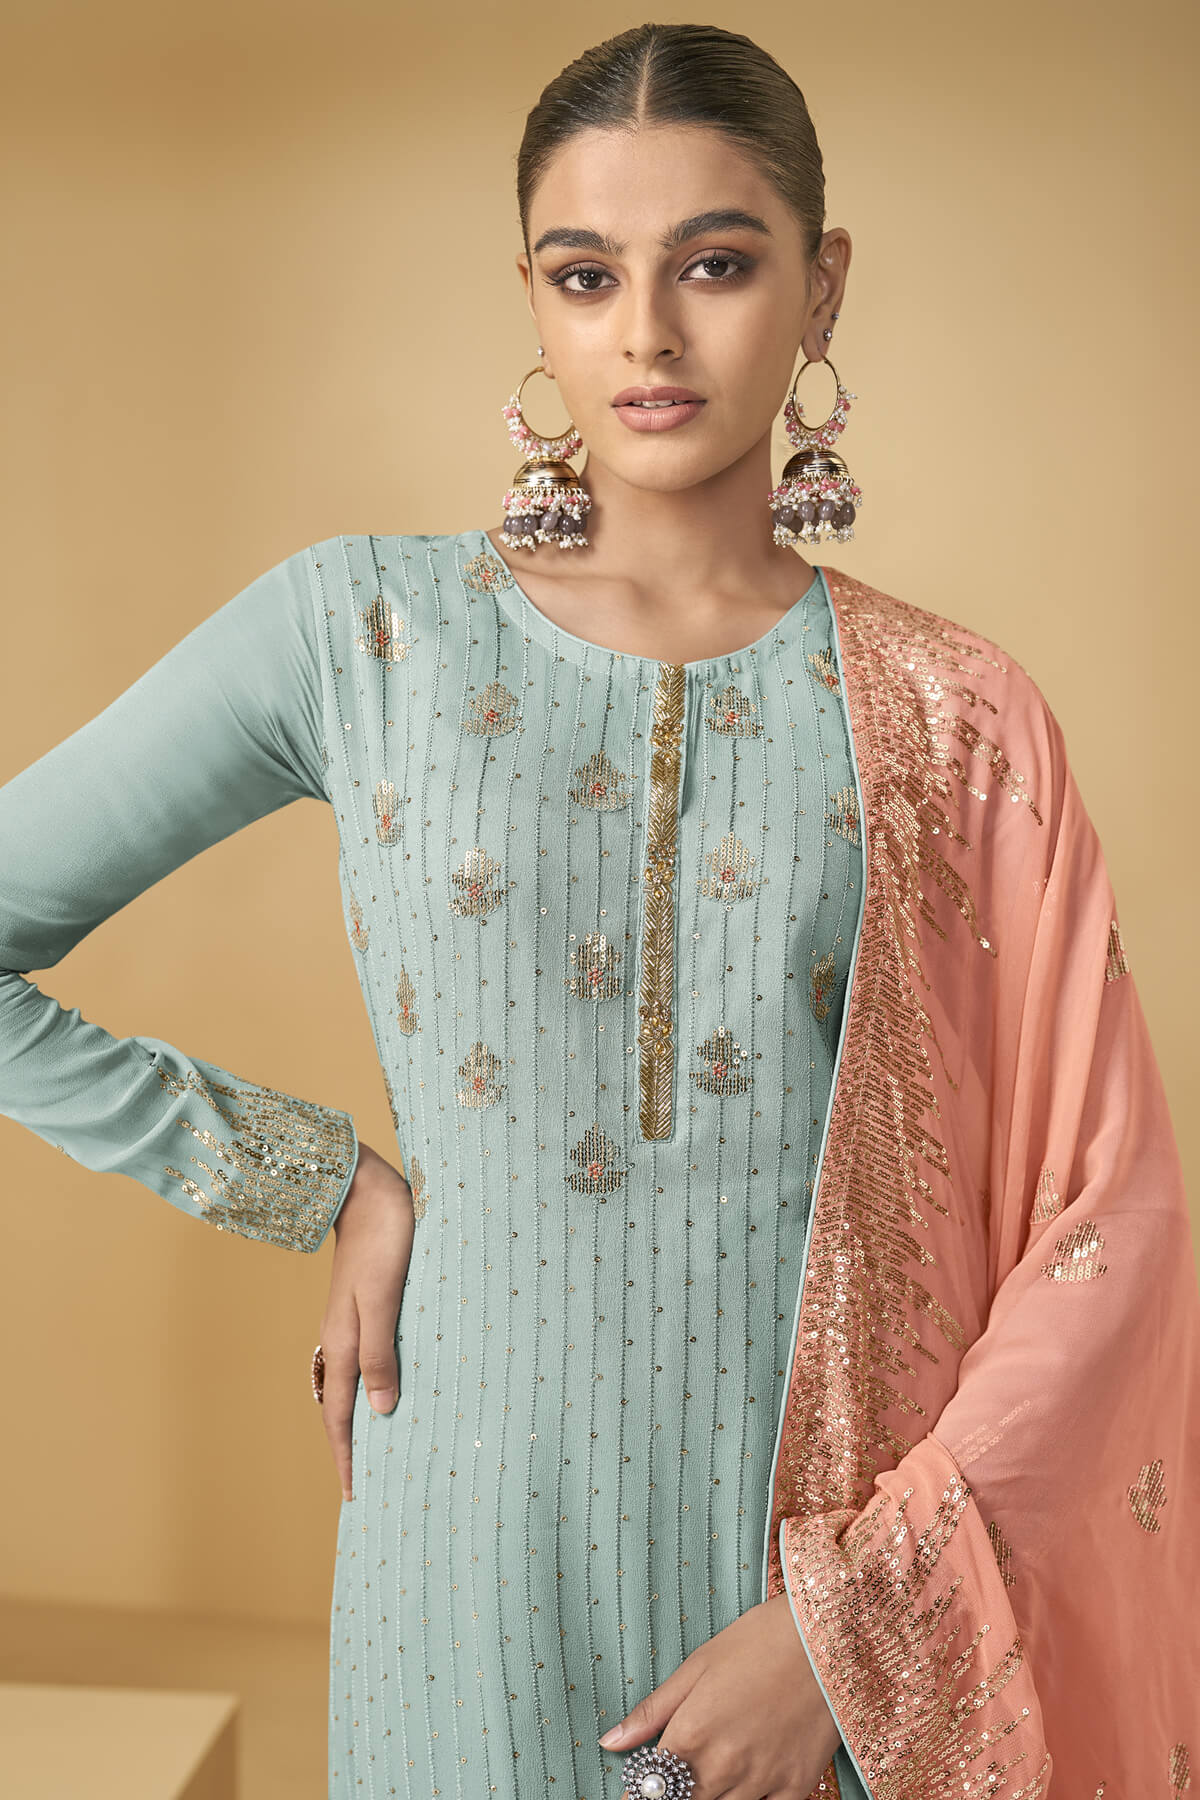 Pakistani Style Sharara Lehenga Suits online in Canada USA UK Australia New Zealand France Mauritius.